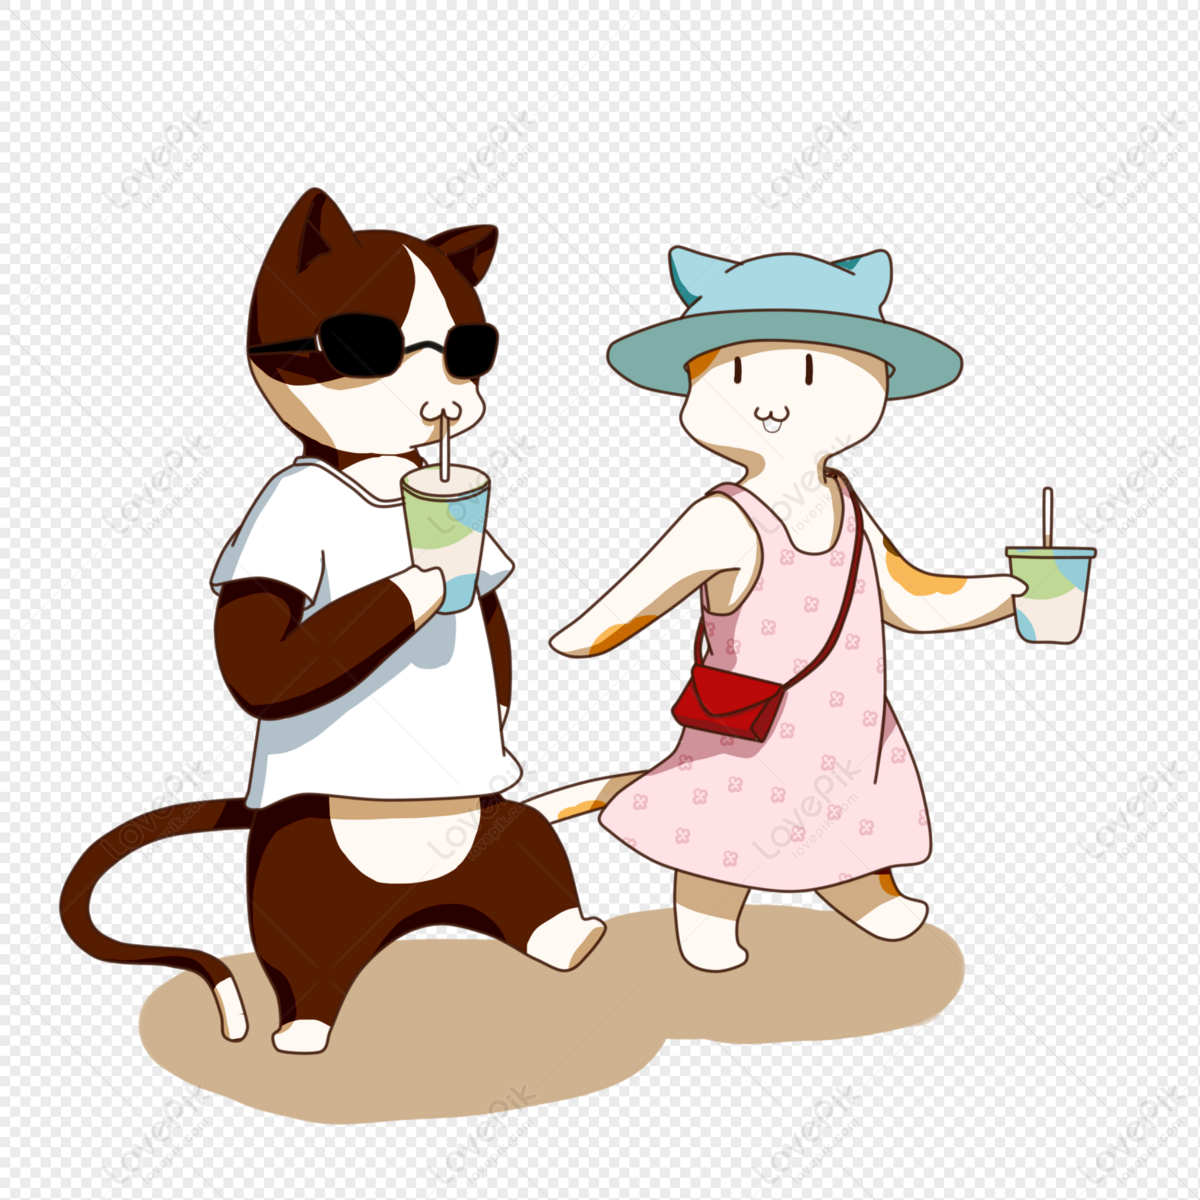 Một bức tranh vẽ mèo uống trà sữa PNG đầy ngộ nghĩnh đang chờ đón bạn! Bạn sẽ yêu thích việc xem những chi tiết tinh tế và màu sắc sáng tạo được thể hiện trên bức tranh.